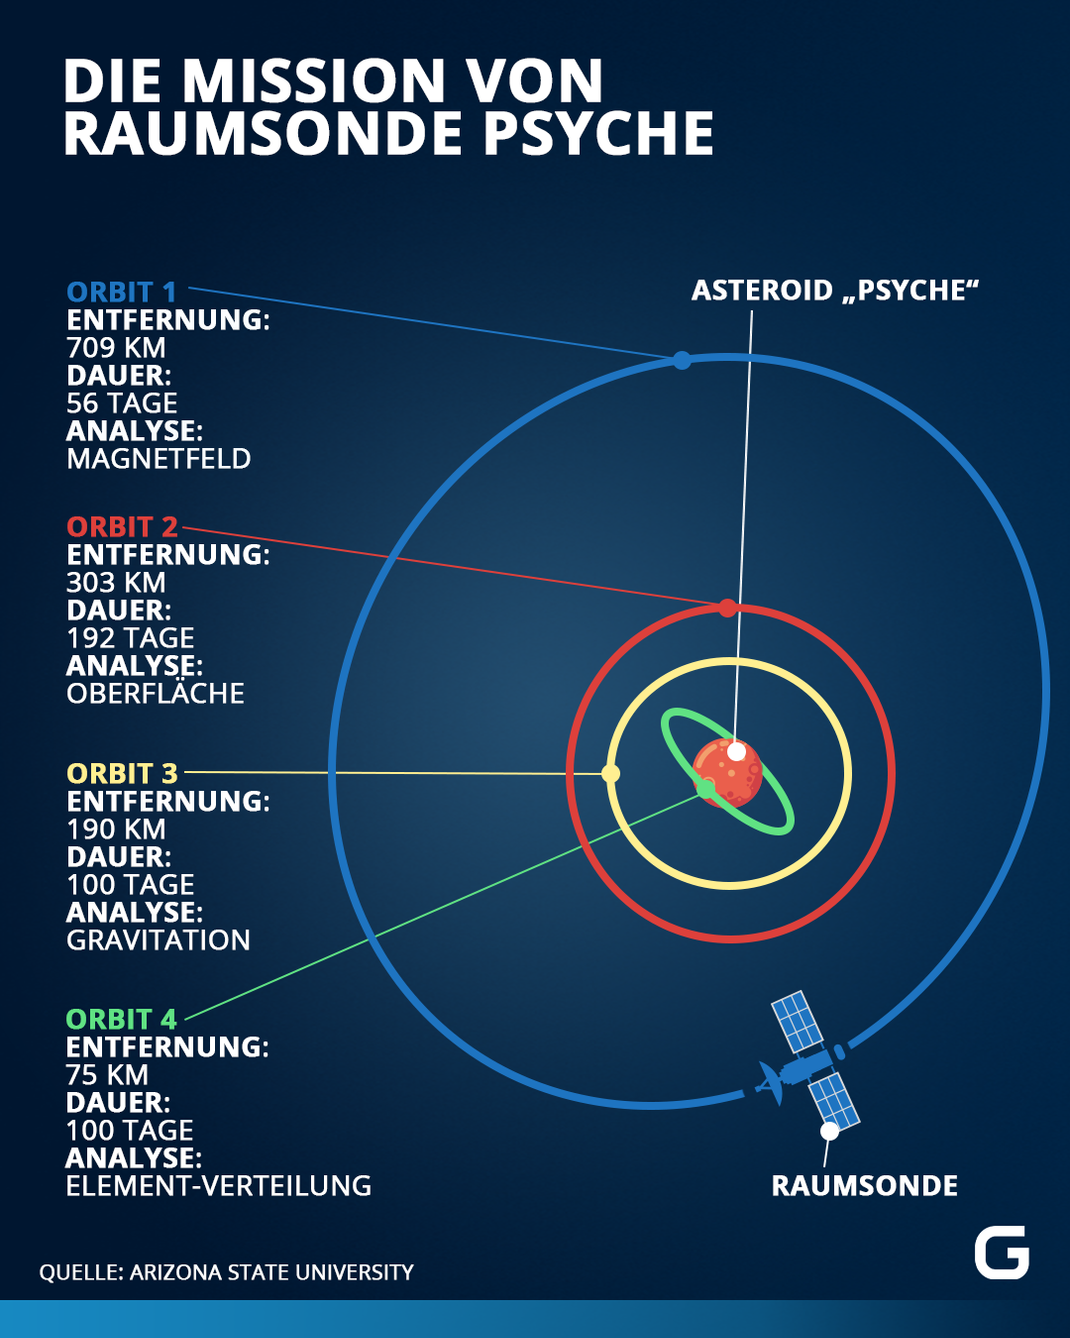 Die Raumsonde Psyche wird den Asteroiden auf vier verschiedenen Umlaufbahnen umkreisen. In diesen Phasen untersucht sie unterschiedliche Aspekte des Asteroiden.